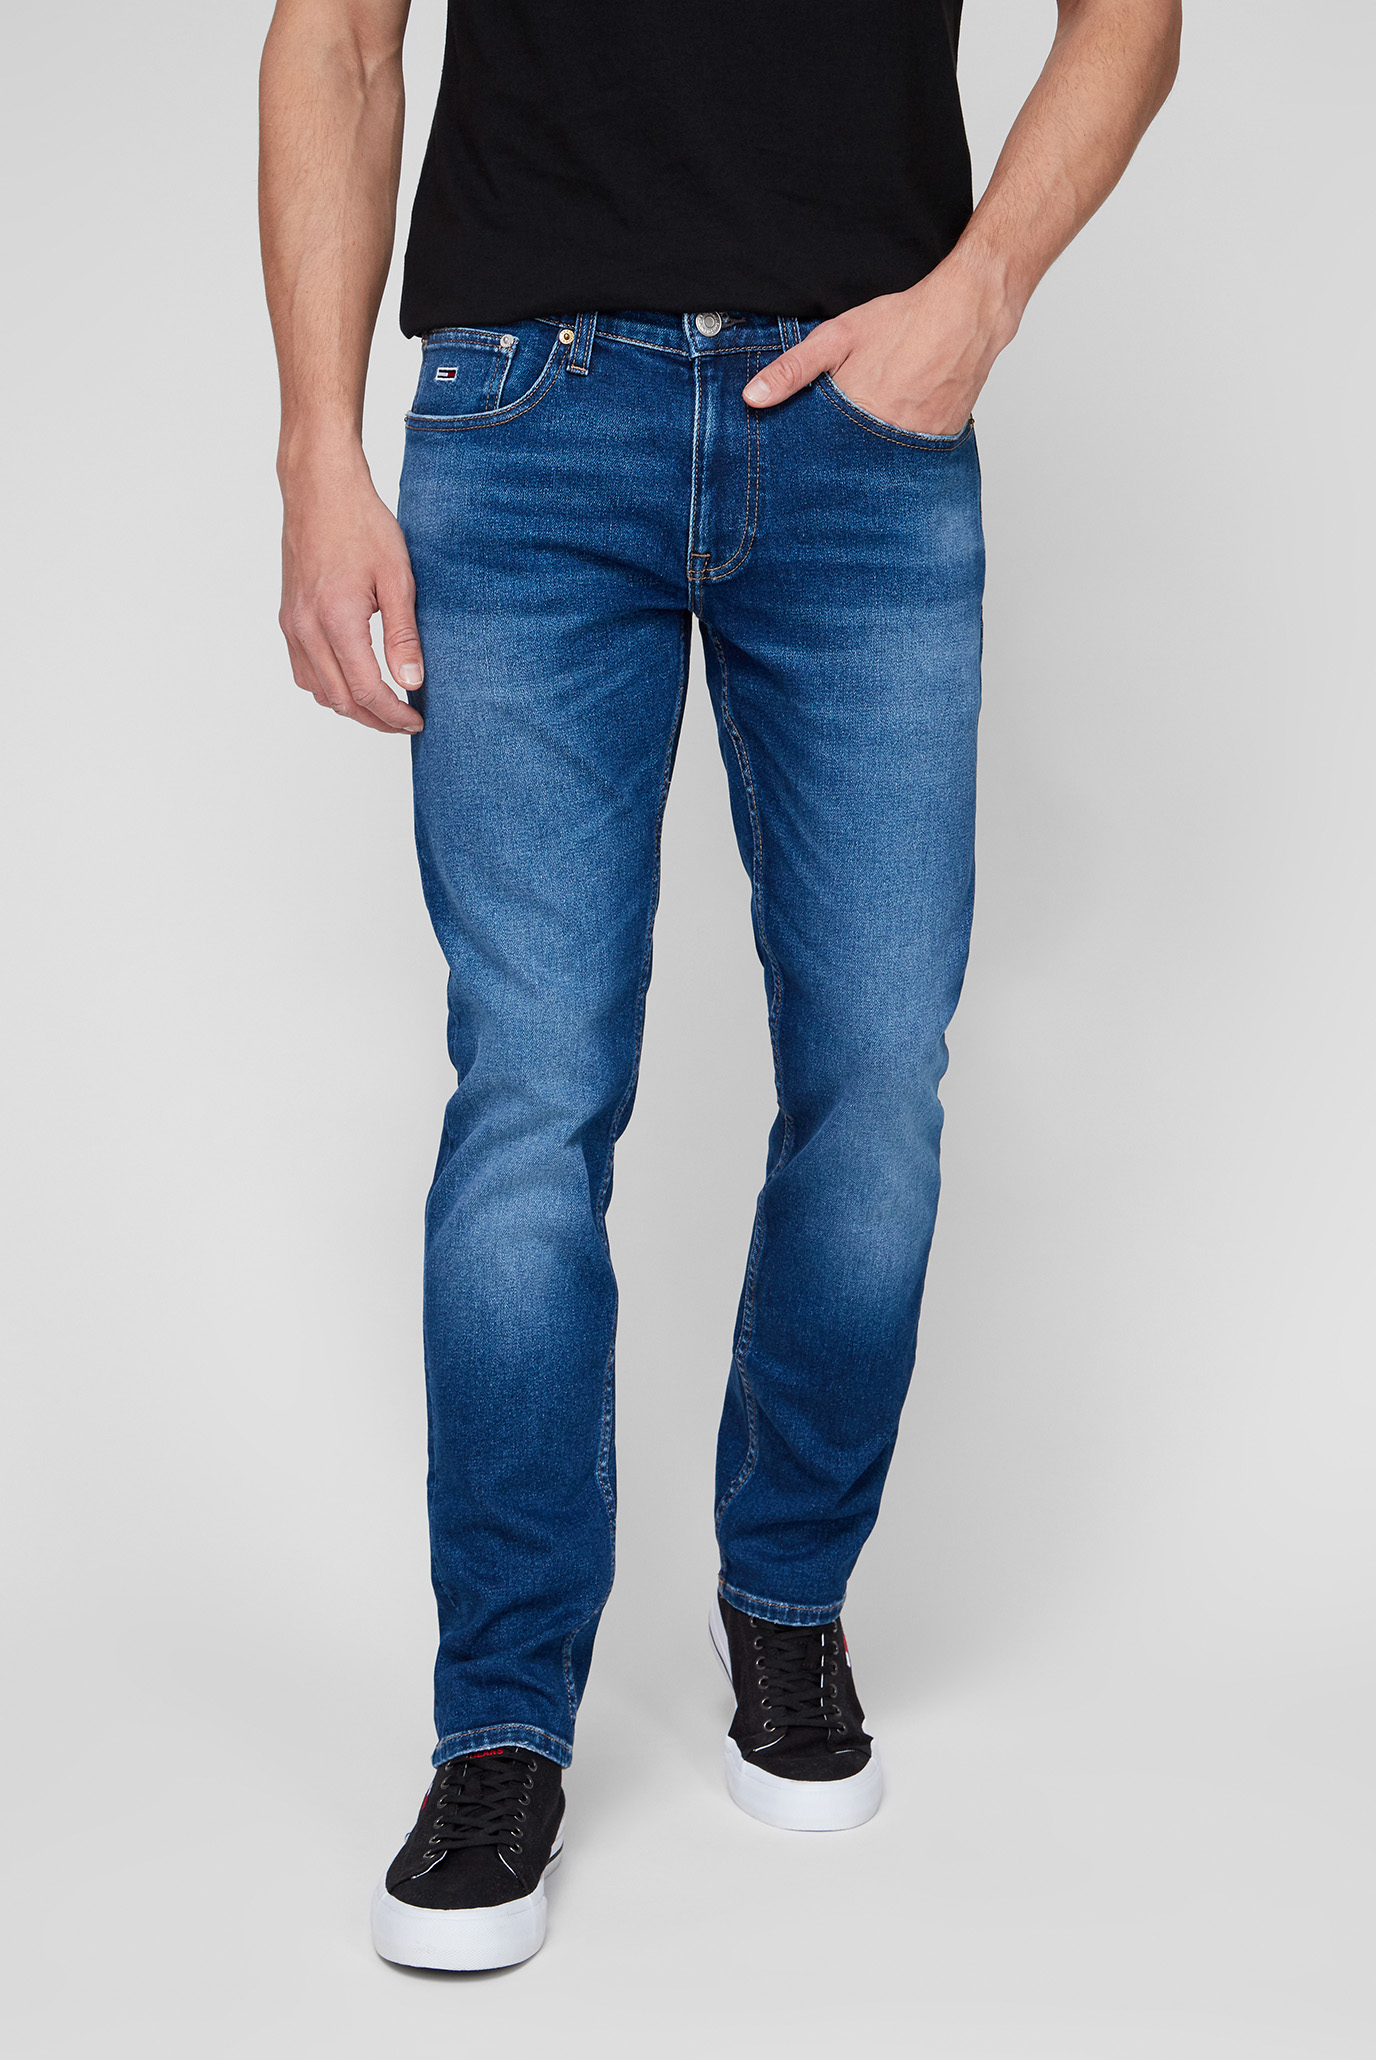 Чоловічі сині джинси SCANTON CE734 1